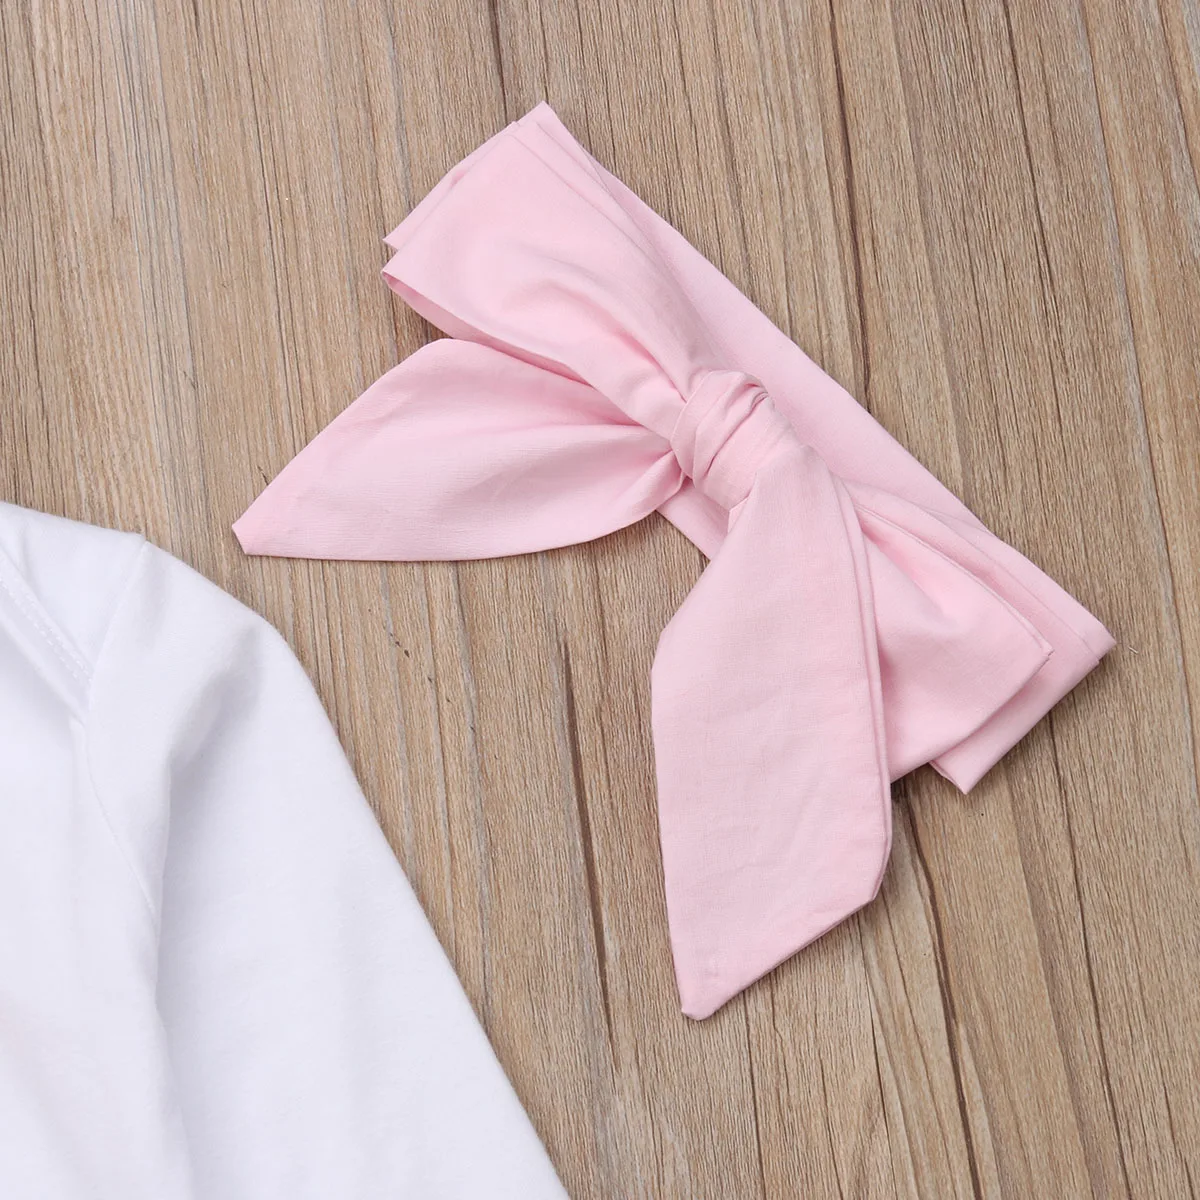 PatPat Spring Autumn Cotton Newborn Letter Print Long Sleeve Jumpsuit Solid Color Pants Bow Headband Set Crawler Suit